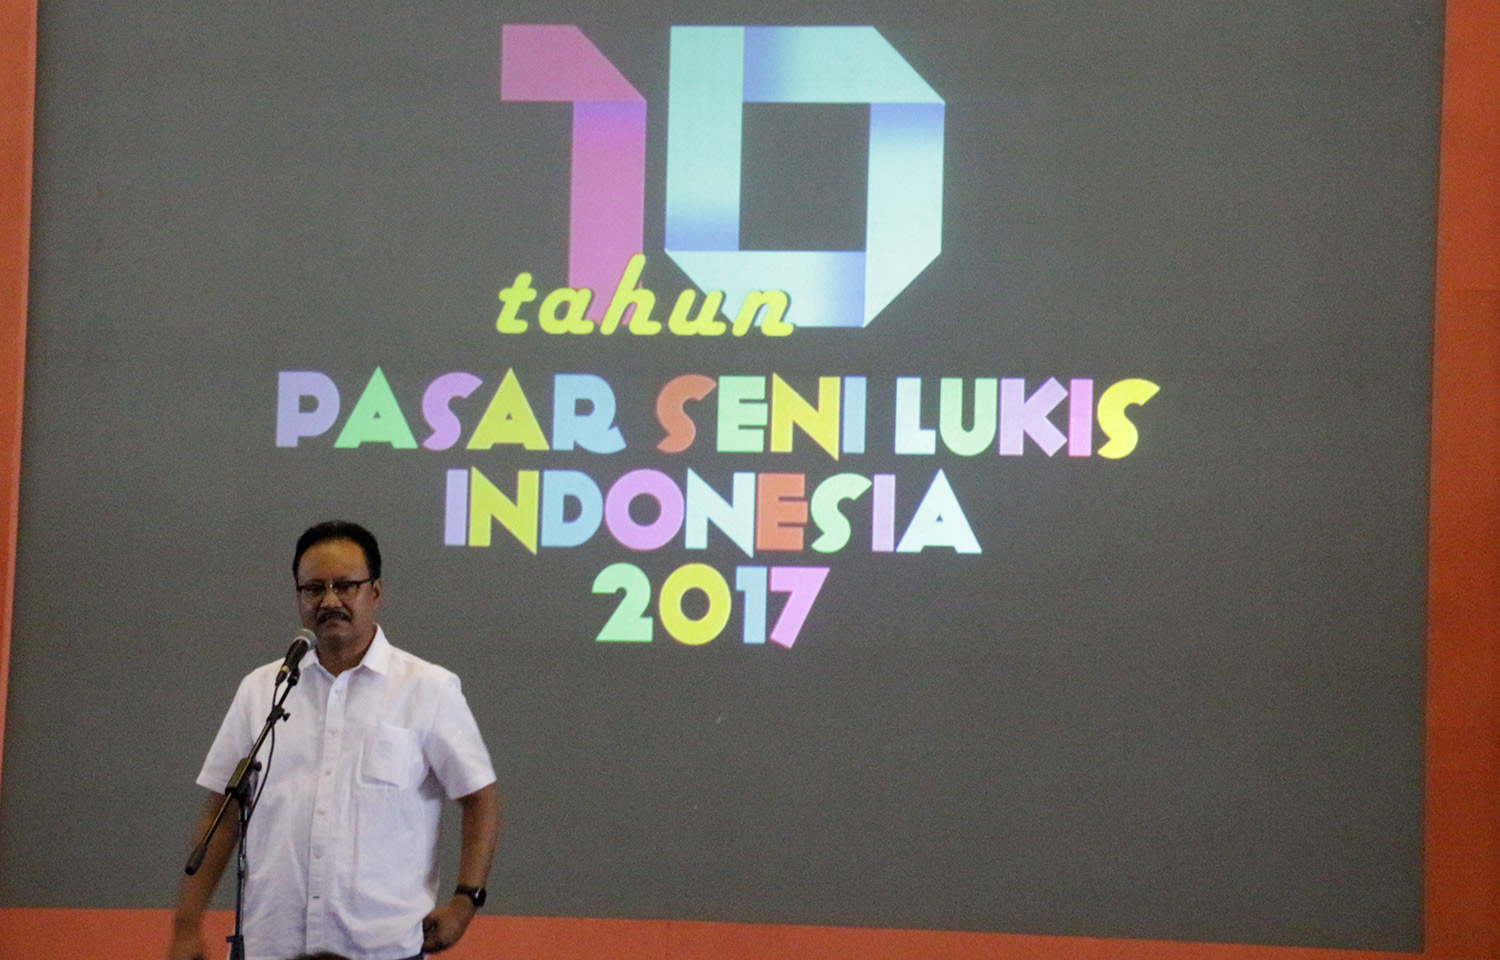 Wagub Jatim, Saifullah Yusuf (Gus Ipul) saat membuka Pasar Seni Lukis Indonesia (PSLI) 2017 di Jatim Expo, Surabaya. (foto: ngopibareng) 